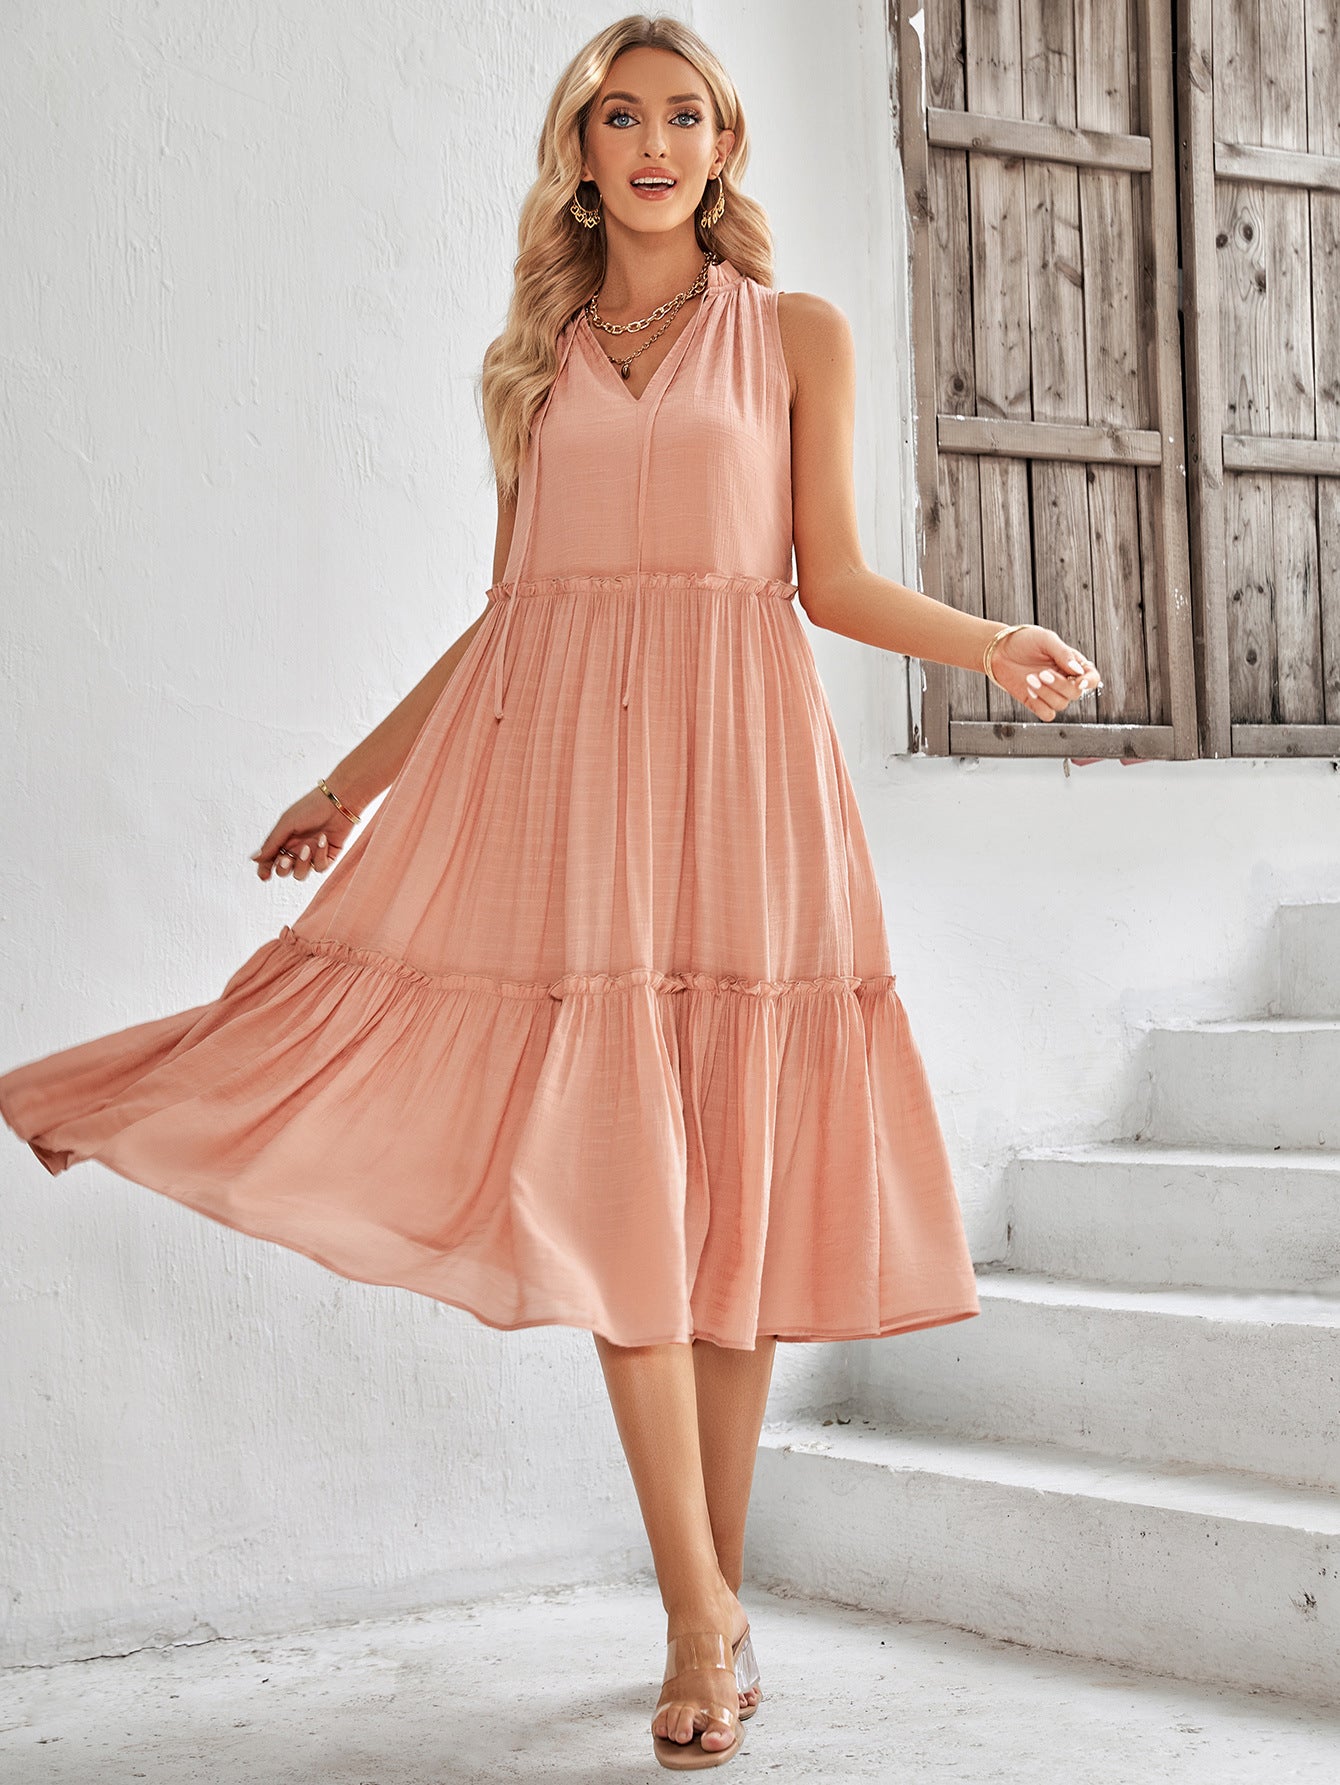 Sleeveless Summer Dress